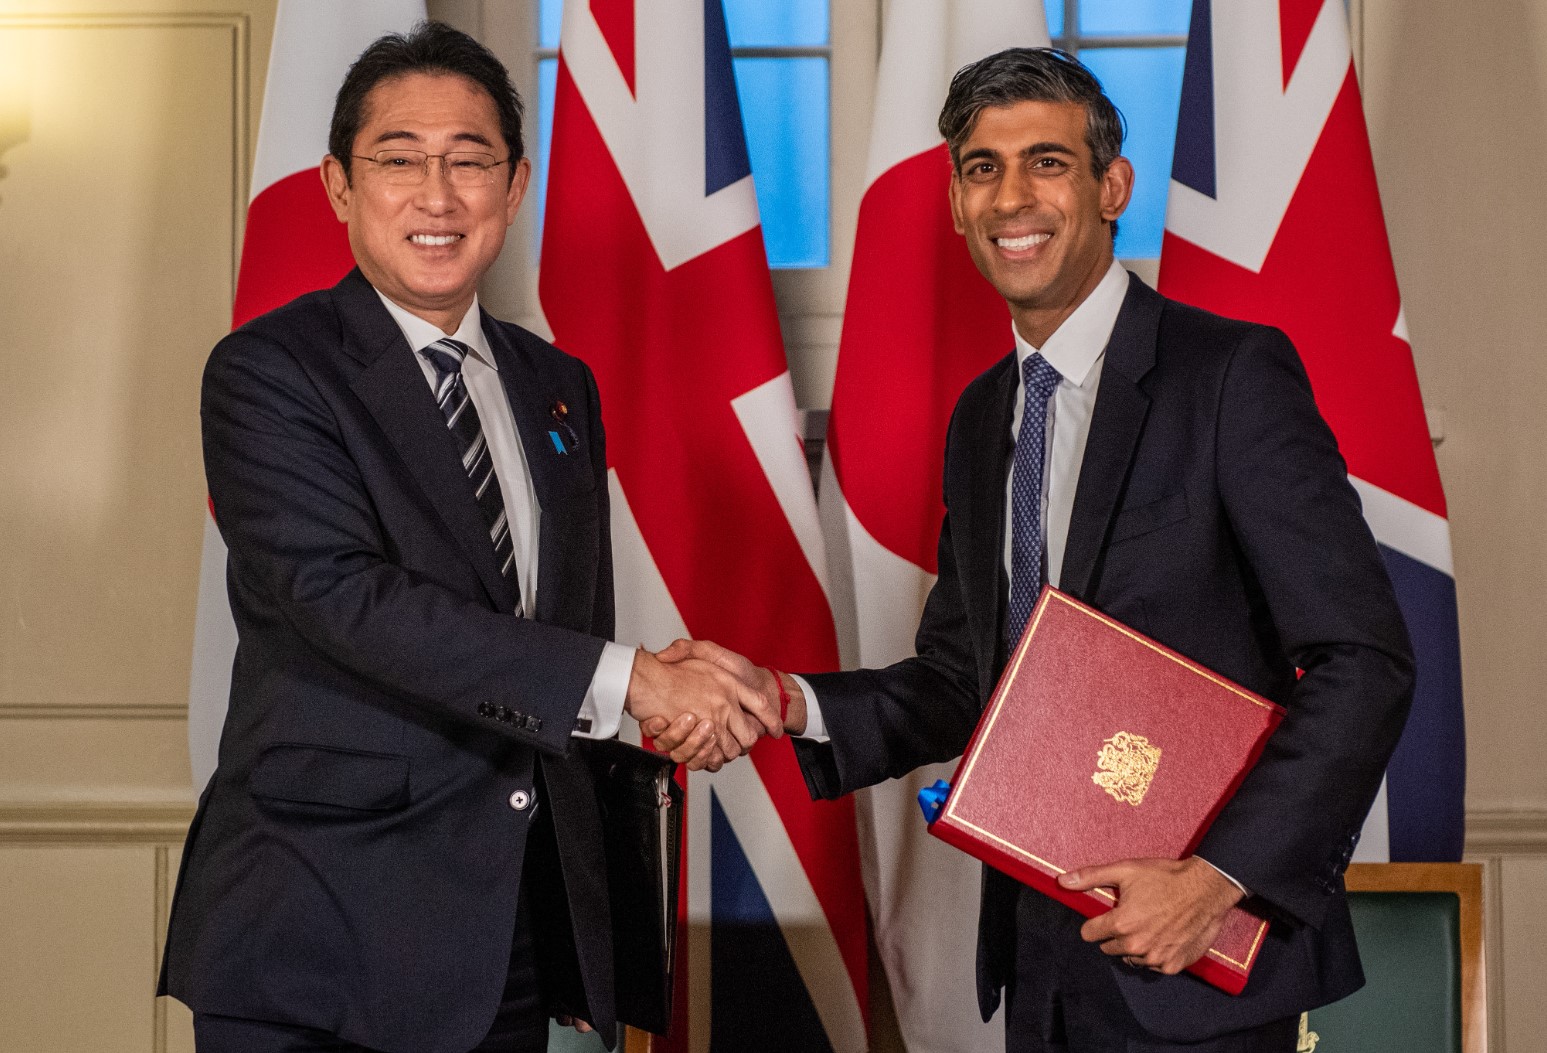 Великобритания и Япония заздравяват връзките в областта на отбраната